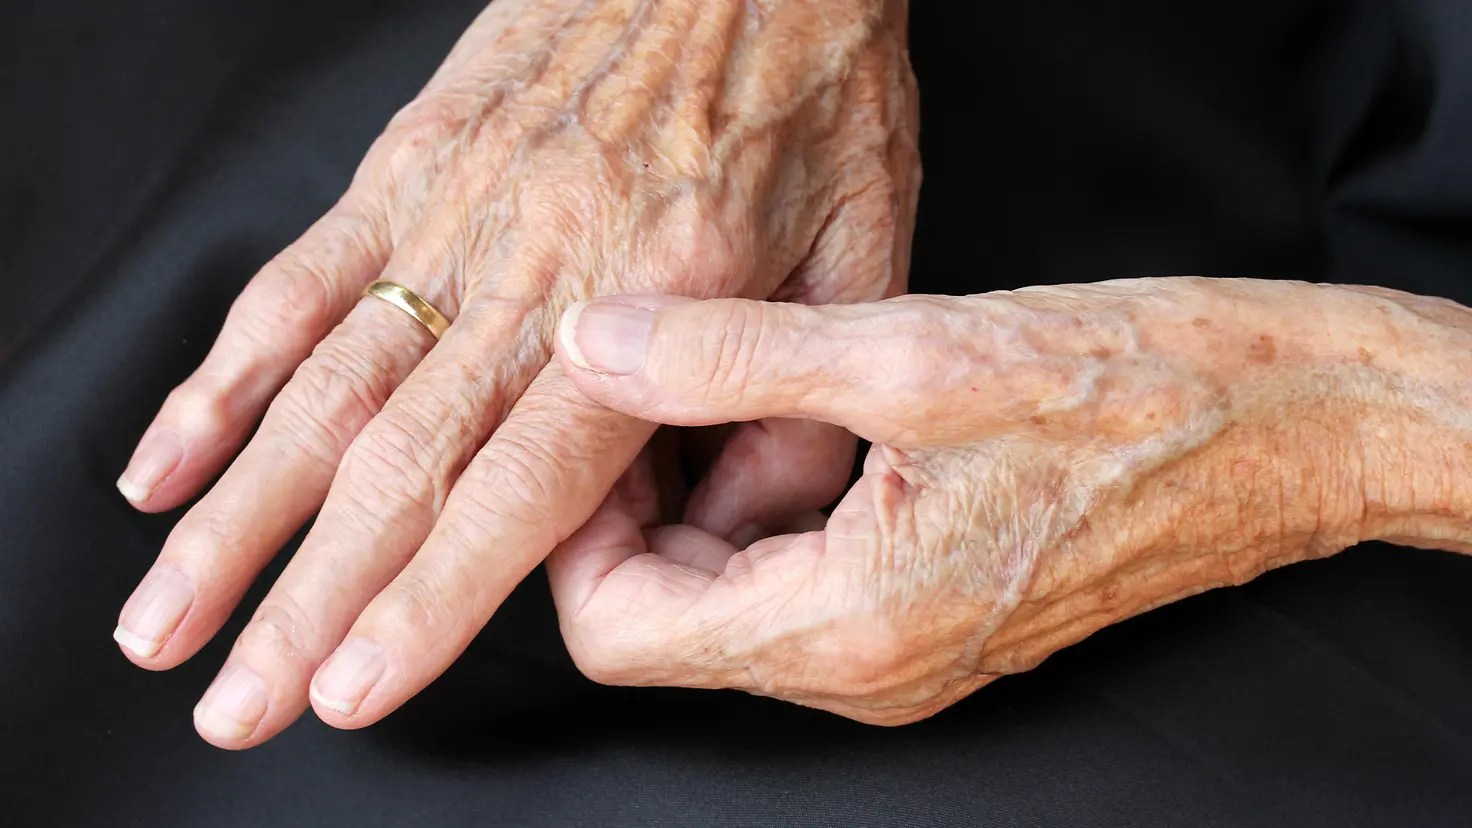 Zu sehen auf diesem Bild sind ein Paar Hände eines älteren Menschen. Der Zeigefinger der rechten Hand wird dabei durch einen Griff mit Daumen-Zeigefinger der linken Hand gehalten.